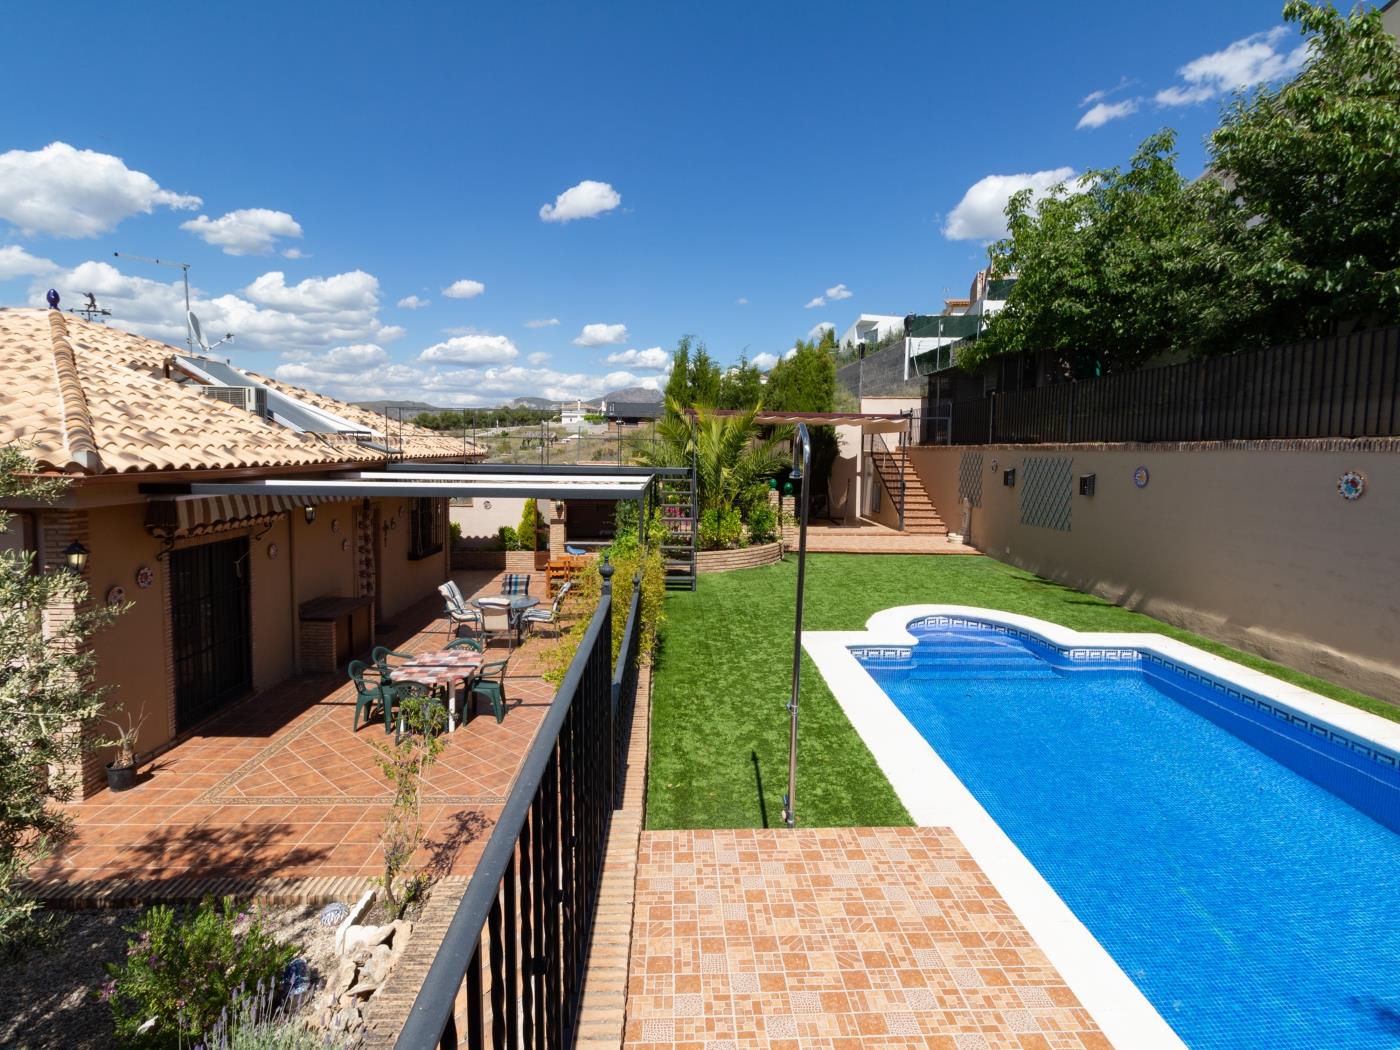 Casa con piscina y wifi gratuito en La Zubia